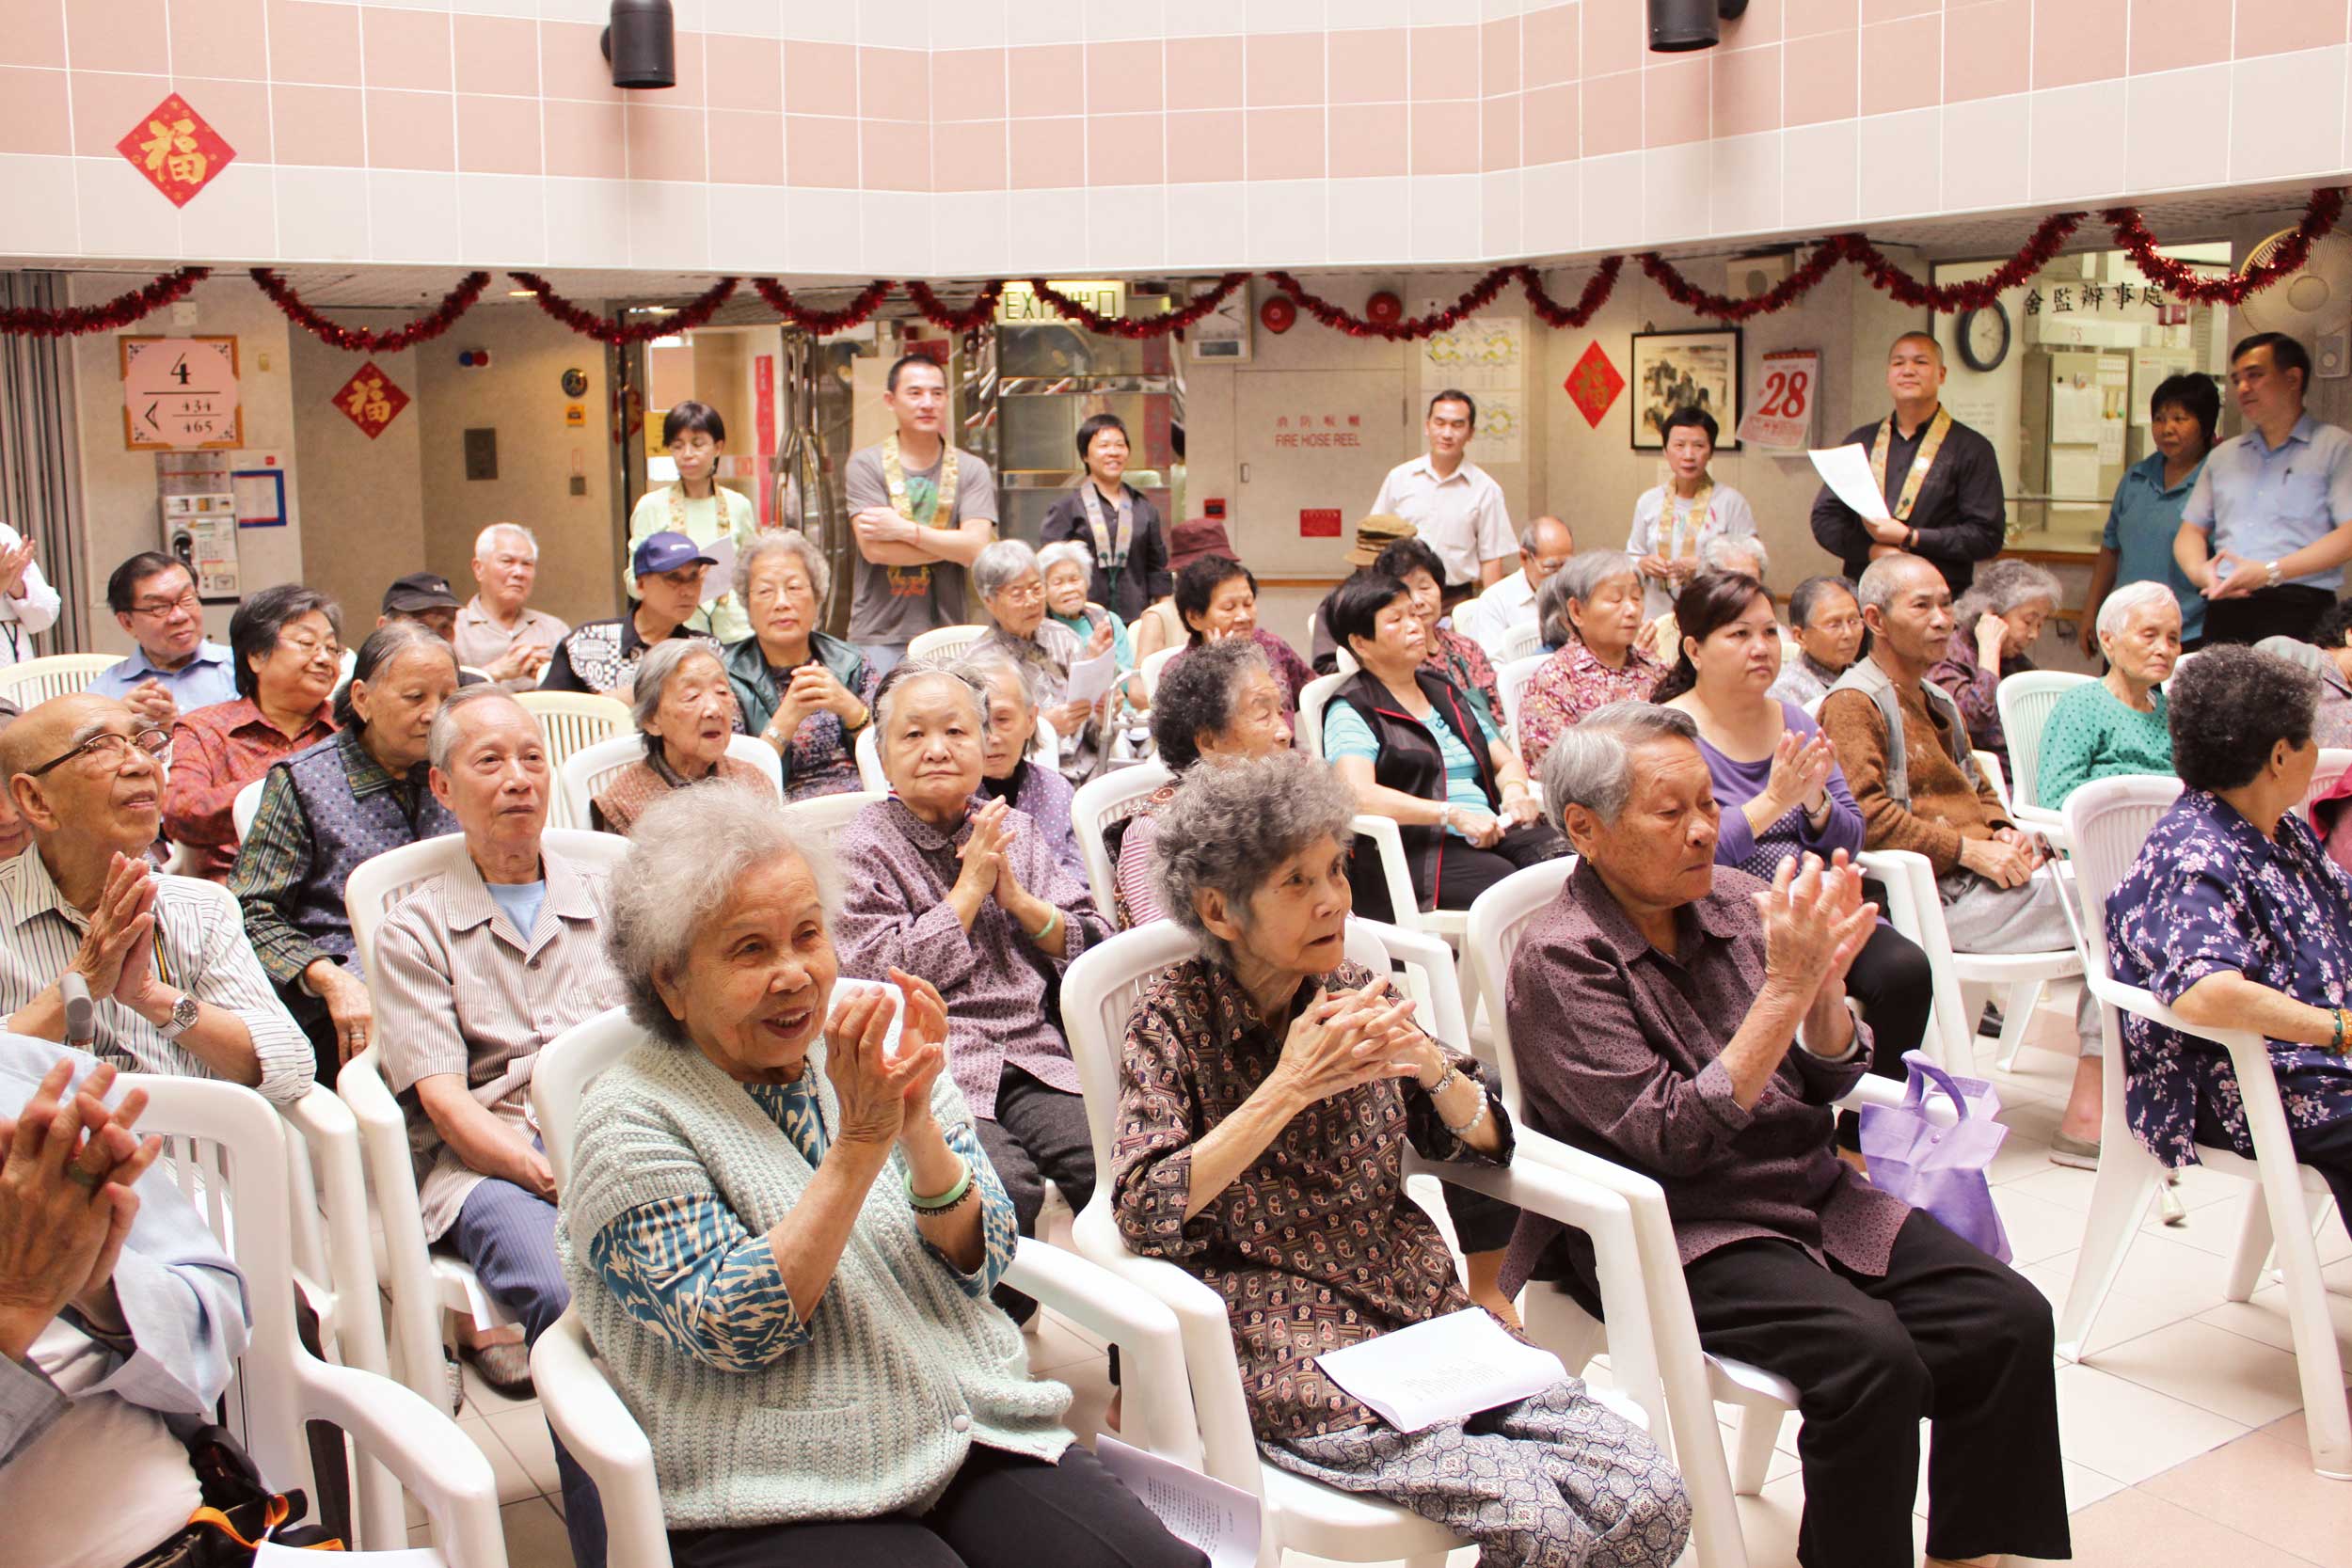 為社區老人送上關愛和喜悅，使他們感受到光明的溫暖。